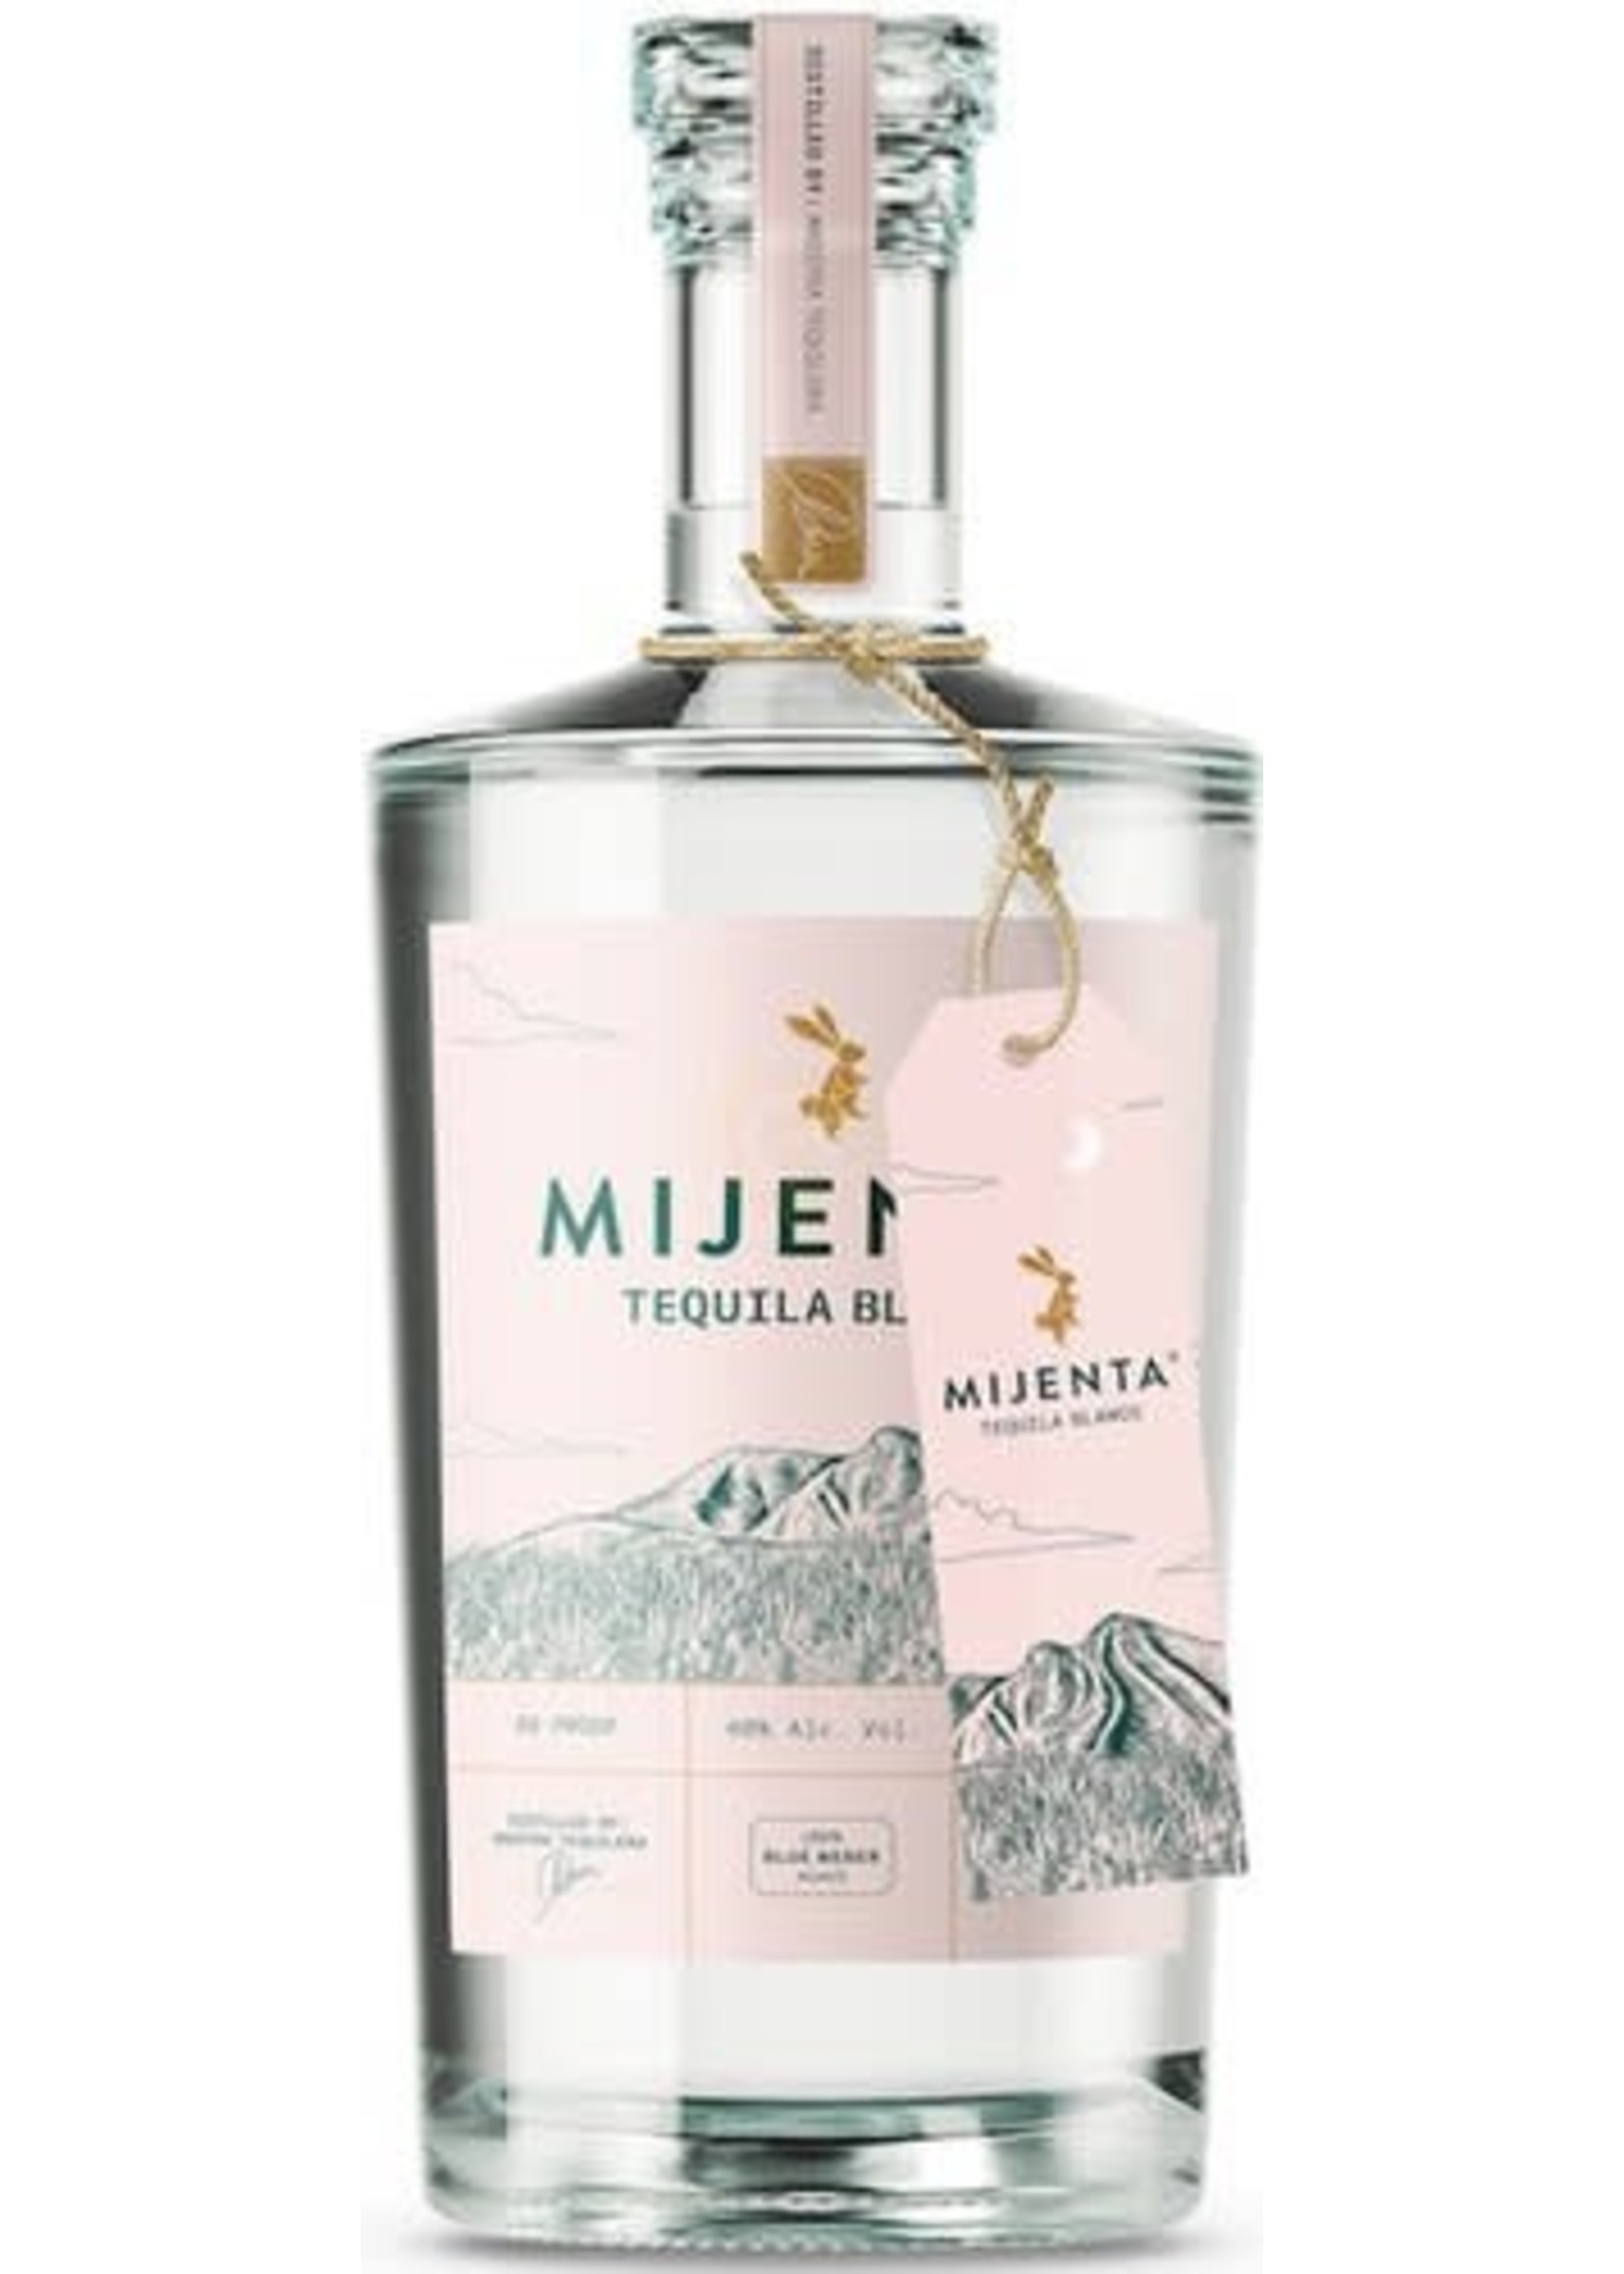 Mijenta Mijenta / Tequila Blanco 40% abv / 750mL